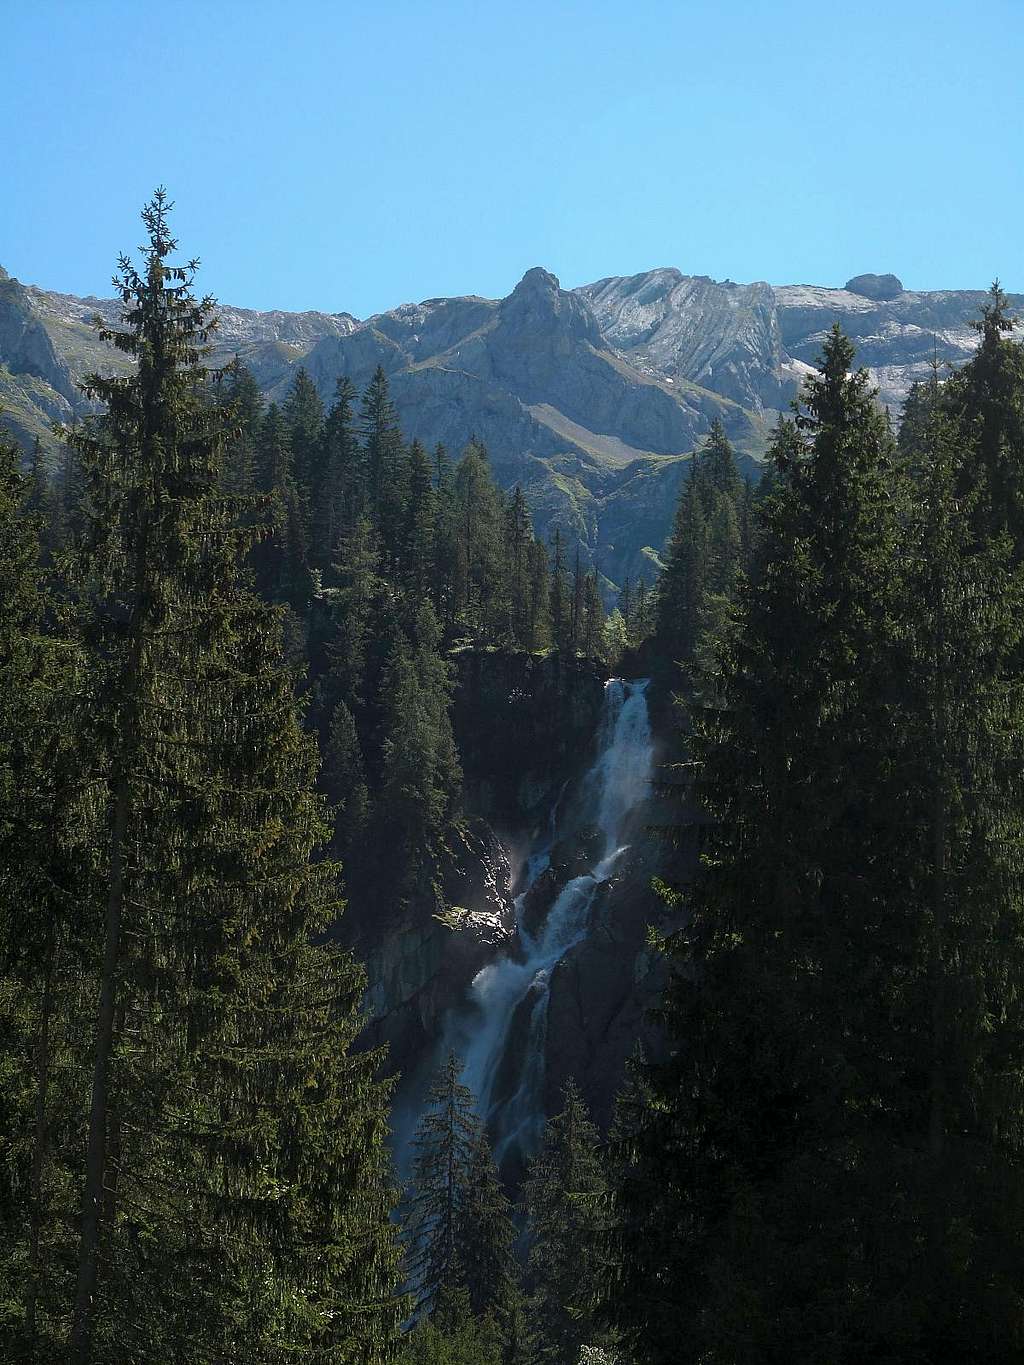 The Iffigenfälle waterfall